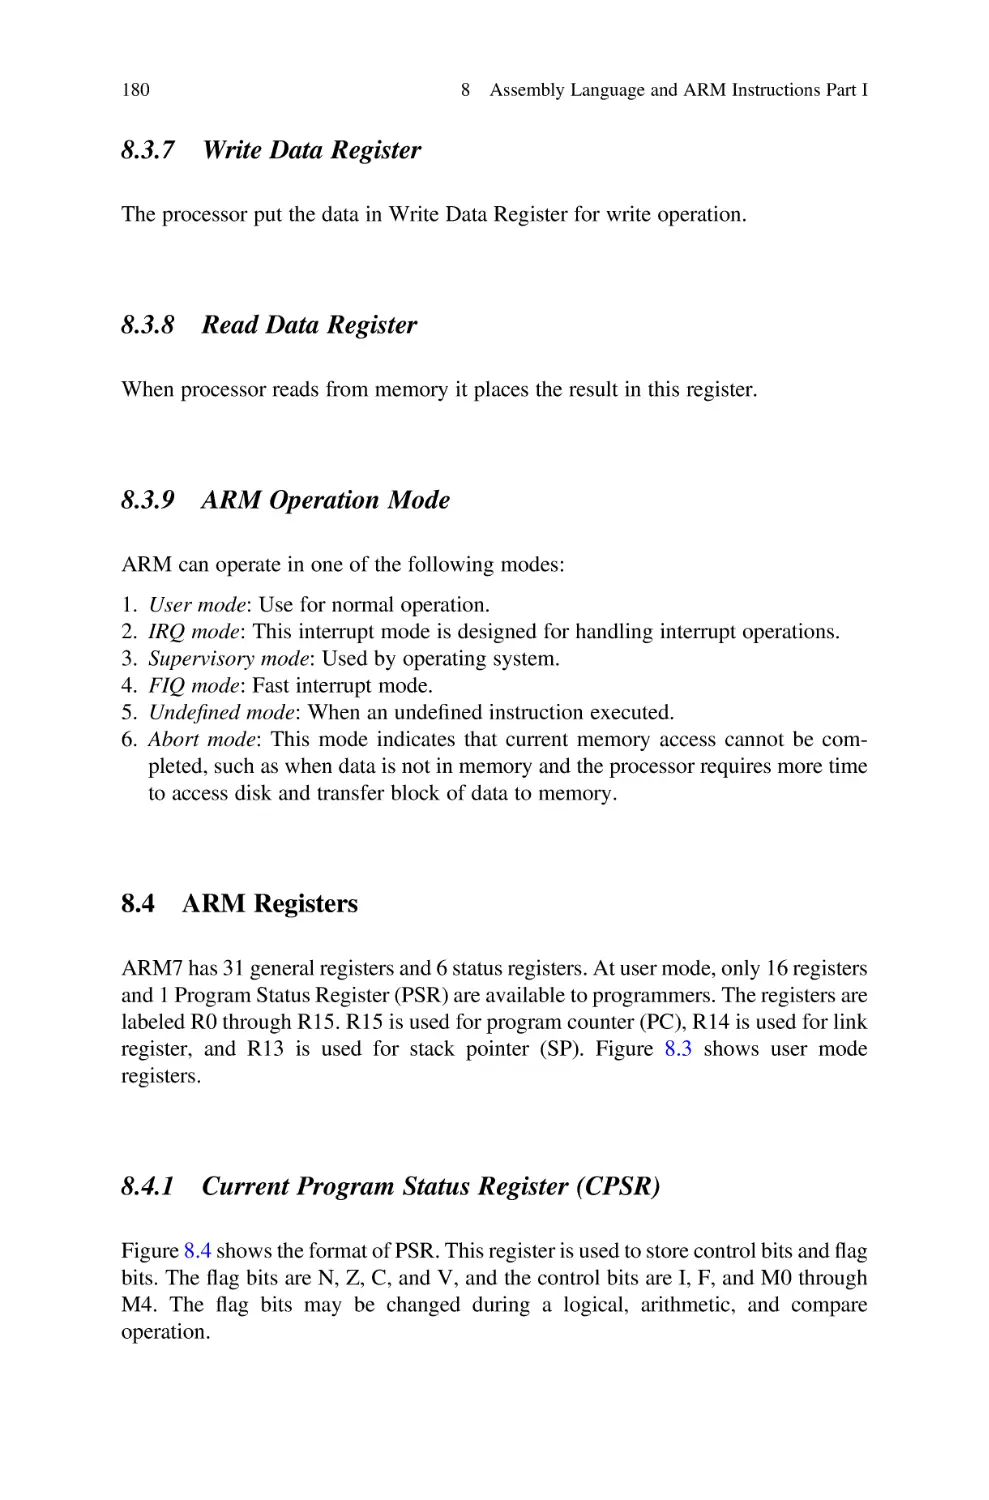 8.3.7 Write Data Register
8.3.8 Read Data Register
8.3.9 ARM Operation Mode
8.4 ARM Registers
8.4.1 Current Program Status Register (CPSR)